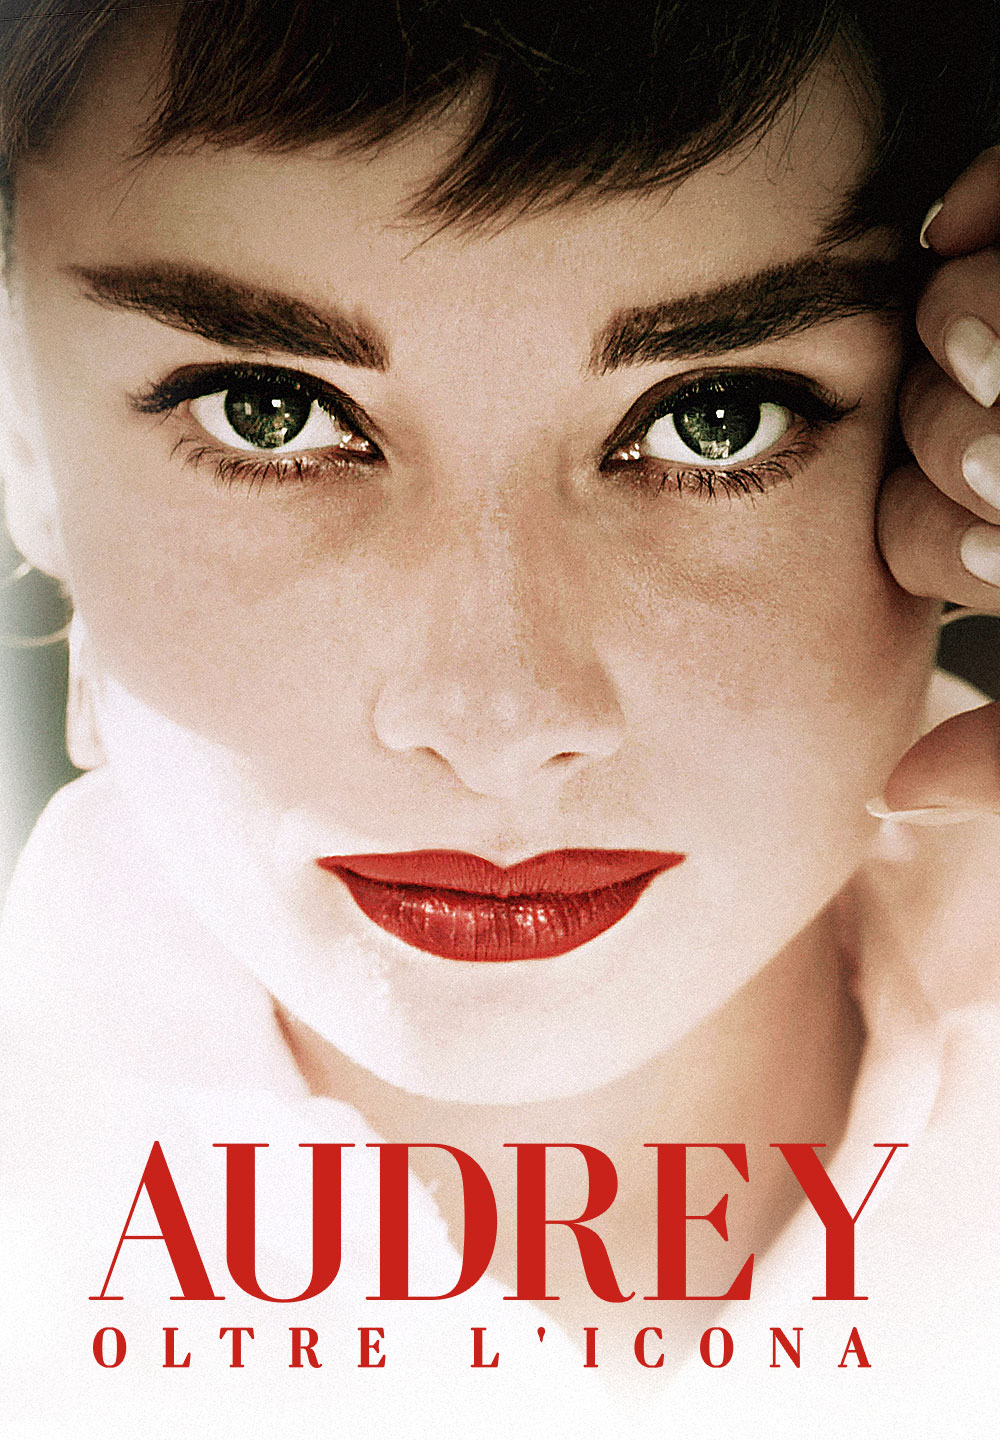 Audrey – Oltre l’icona [Sub-ITA] (2020)